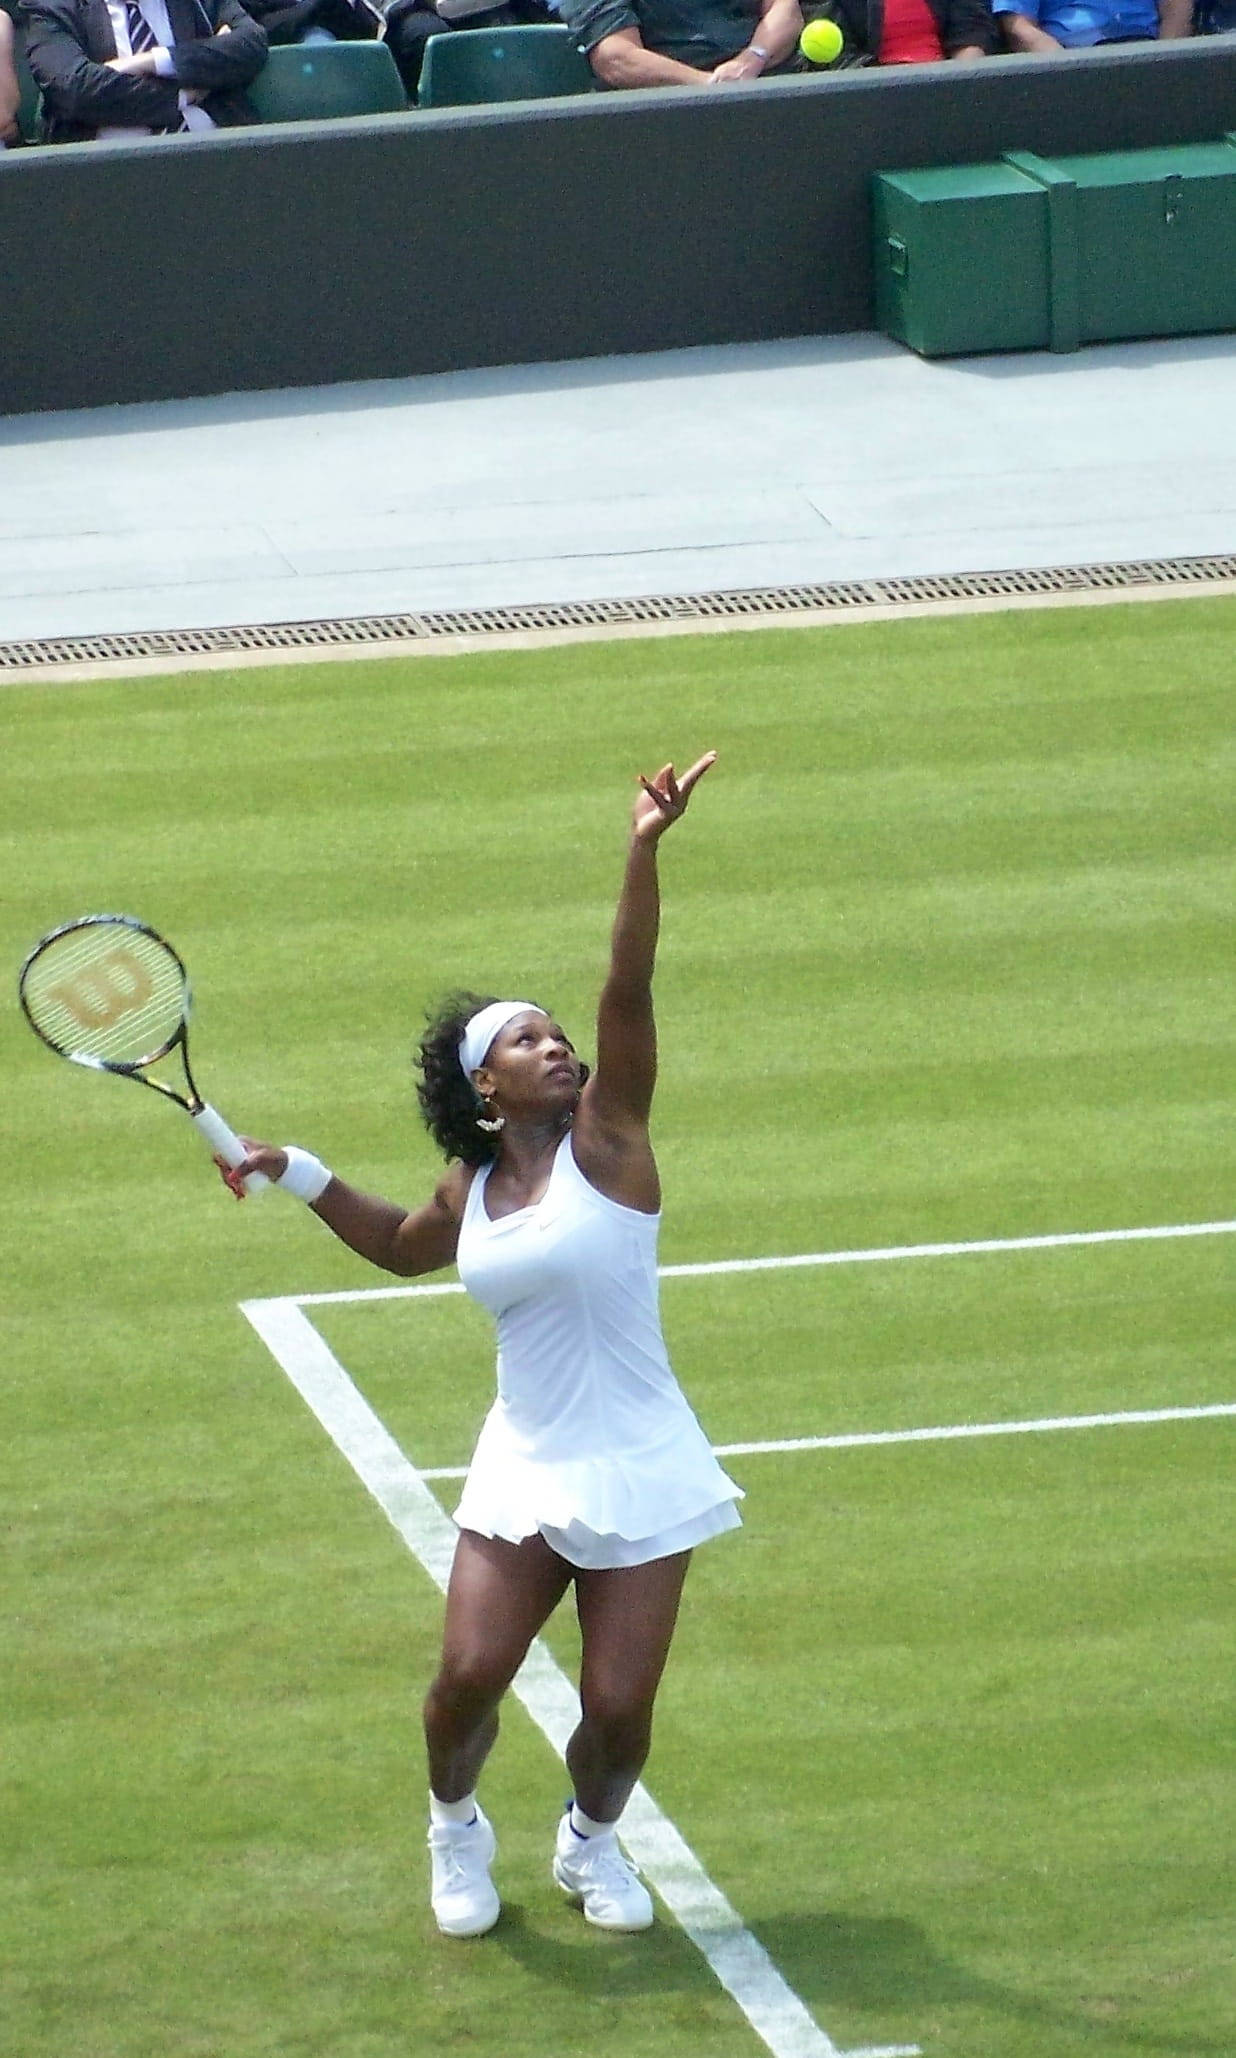 Download Wimbledon Champion Serena Williams Serving Wallpaper | Wallpapers .com